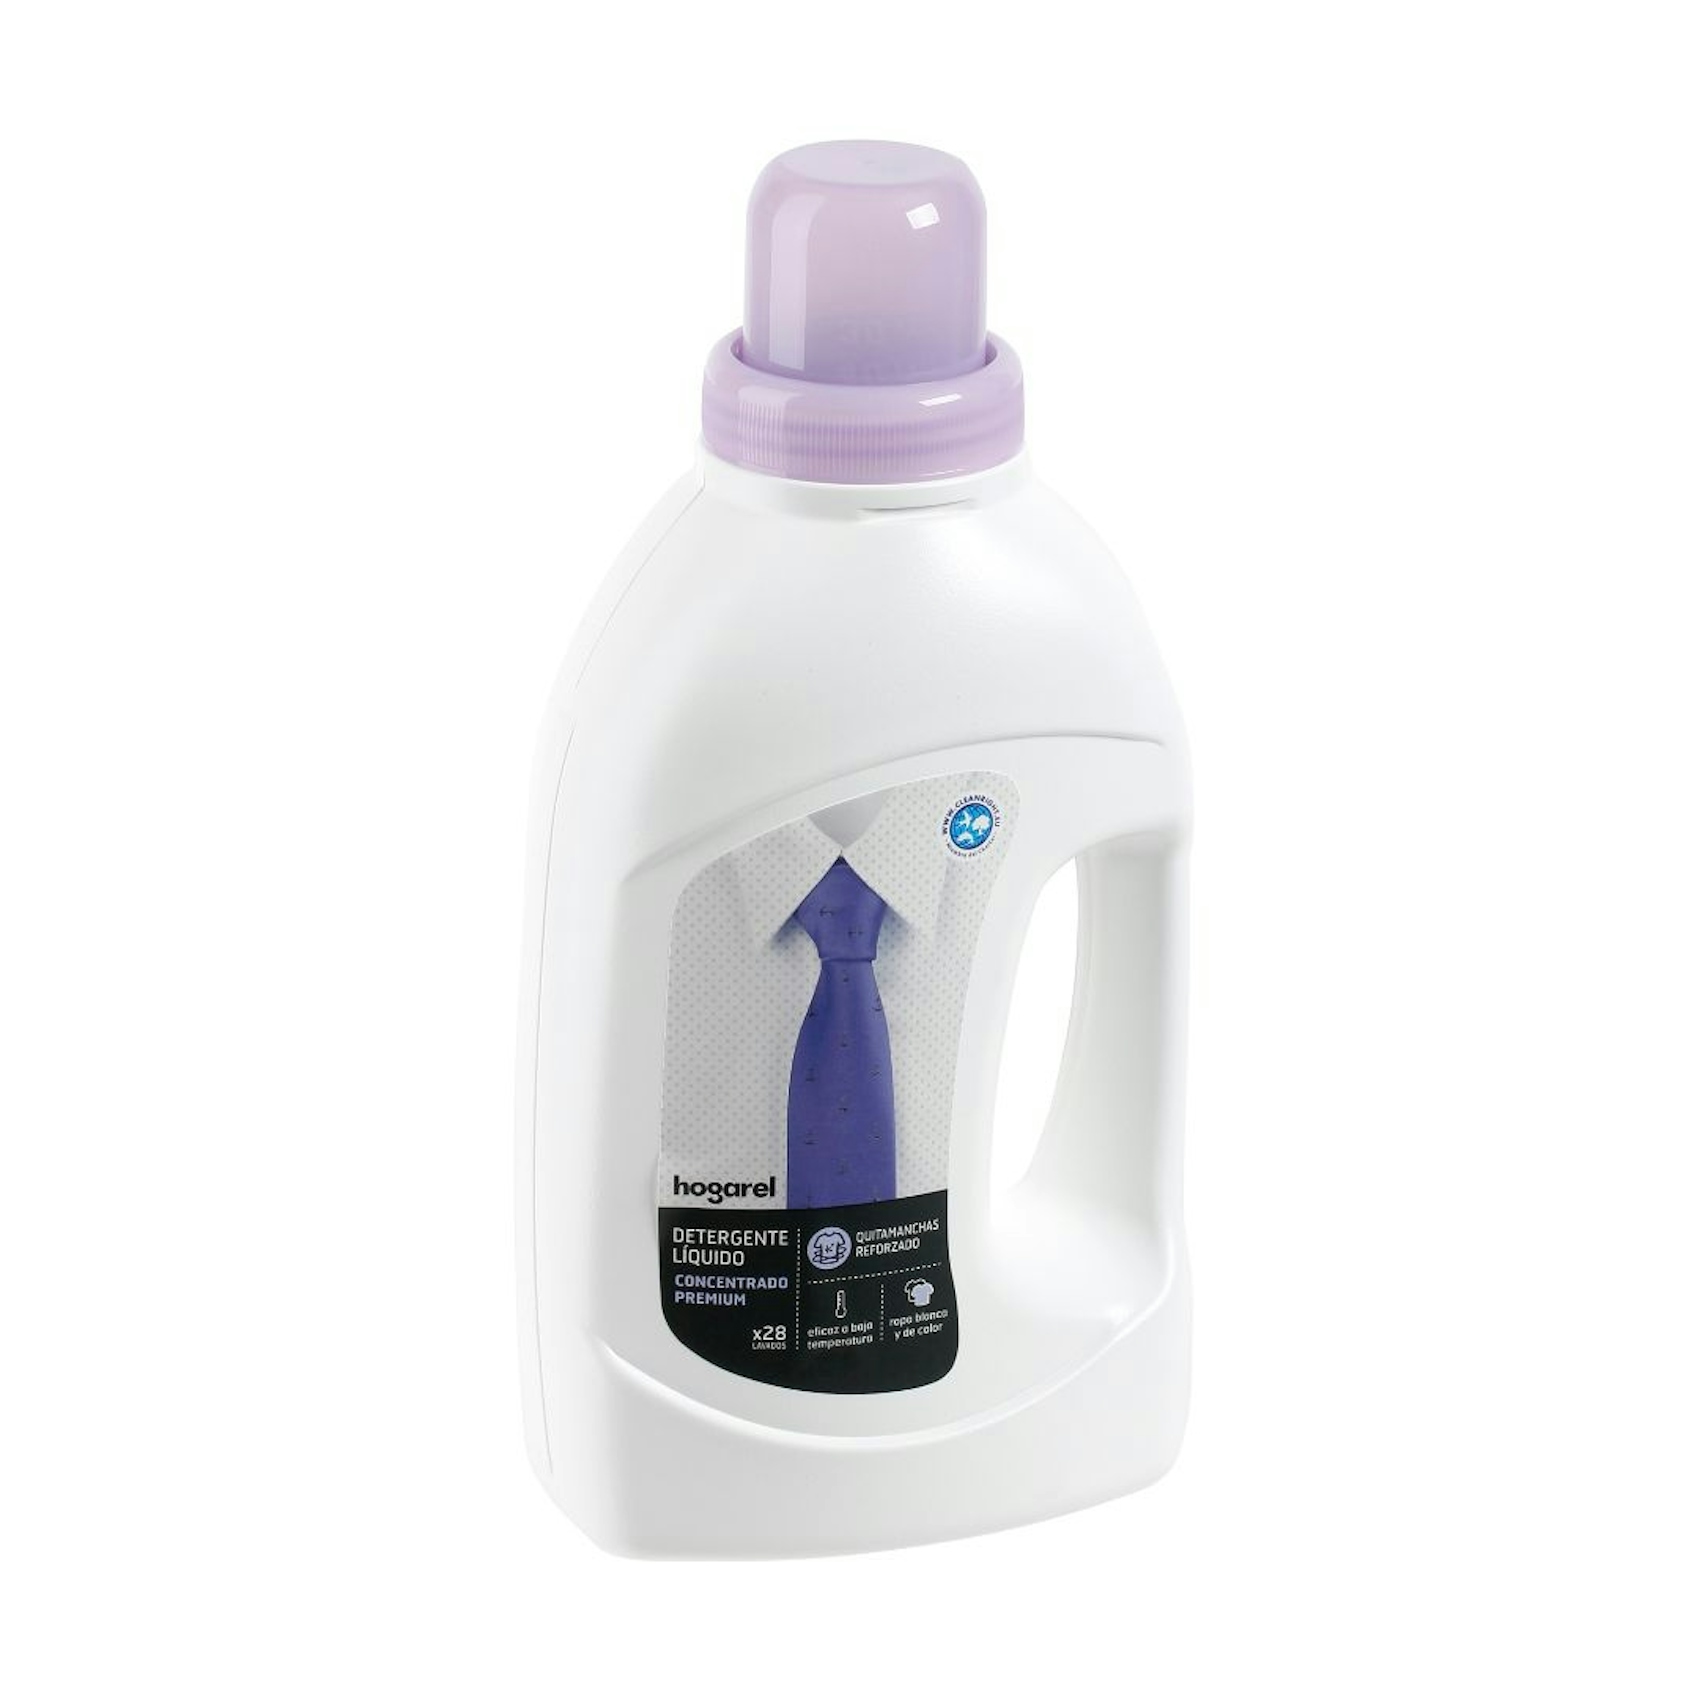 Detergente Líquido Superconcentrado Hogarel 980 Ml 28 lavados